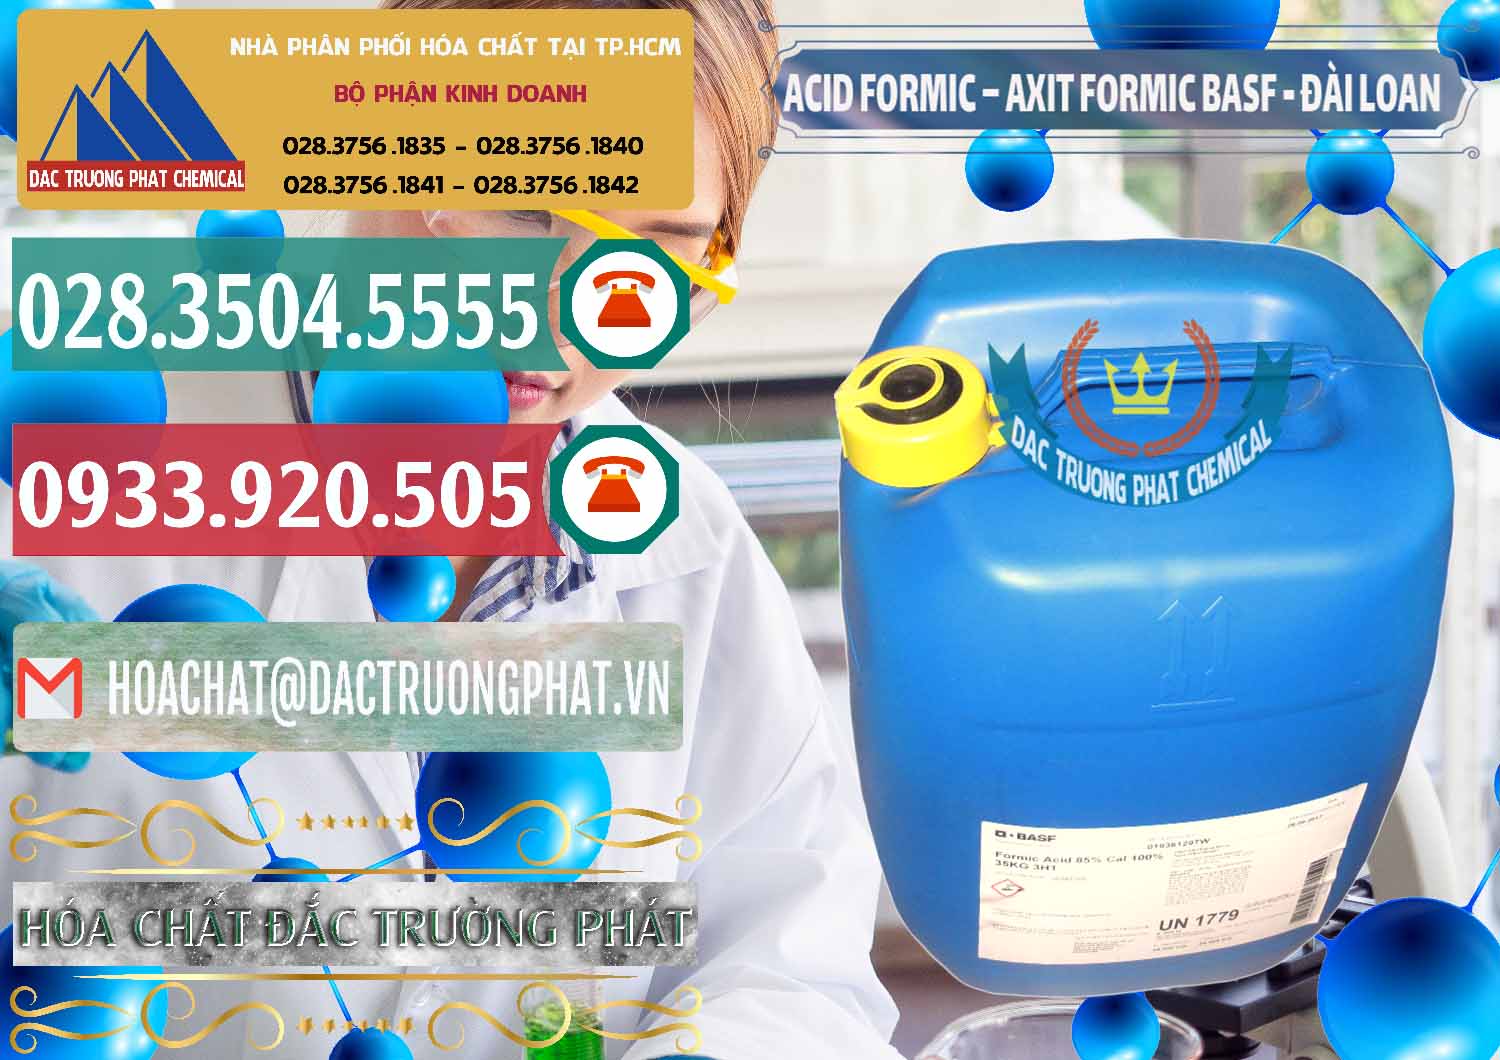 Nơi chuyên cung ứng ( bán ) Acid Formic - Axit Formic 85% BASF Đài Loan Taiwan - 0027 - Công ty chuyên phân phối và bán hóa chất tại TP.HCM - muabanhoachat.vn